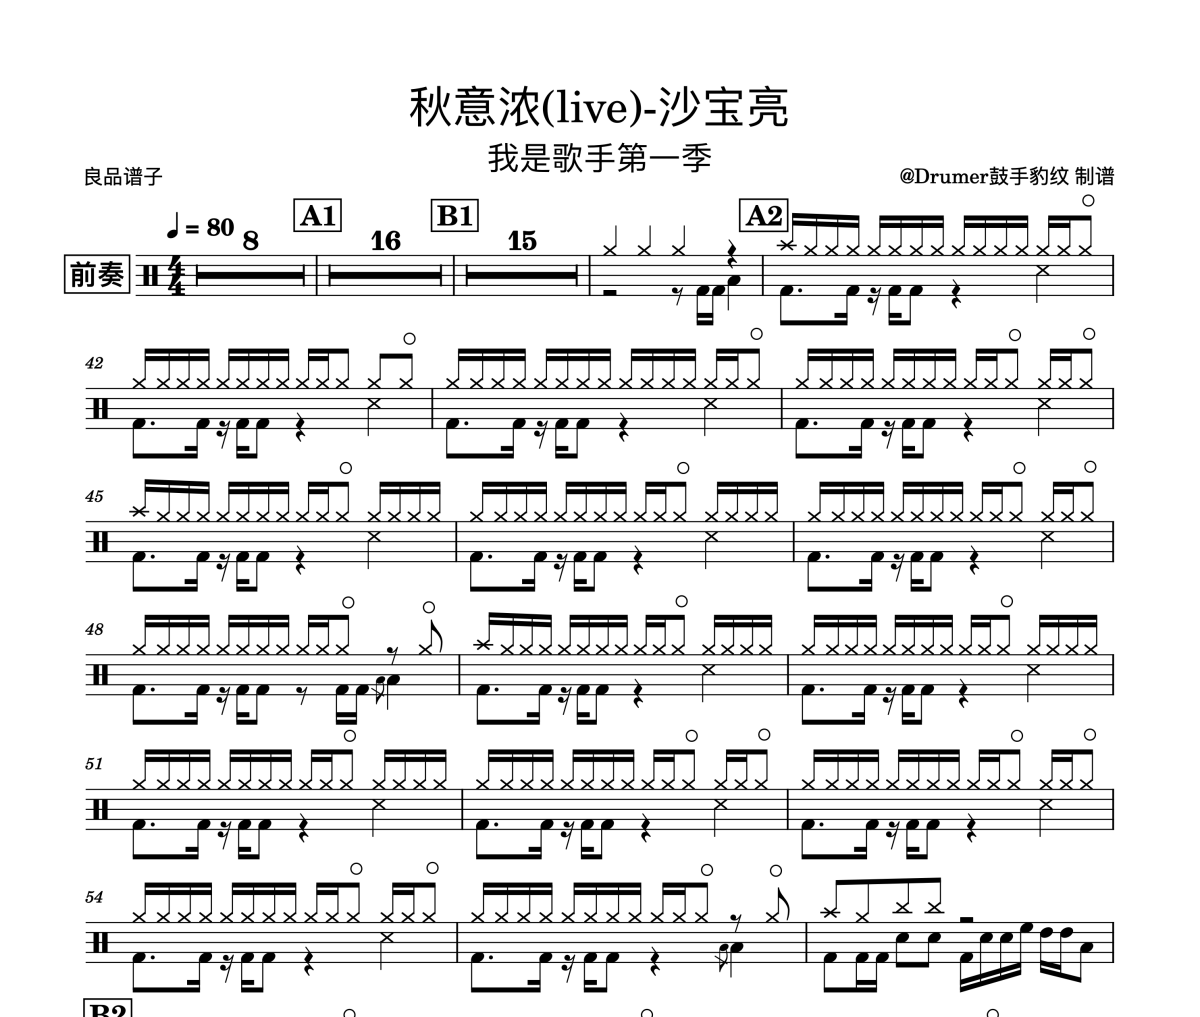 沙宝亮-秋意浓(live)-我是歌手架子鼓谱爵士鼓曲谱